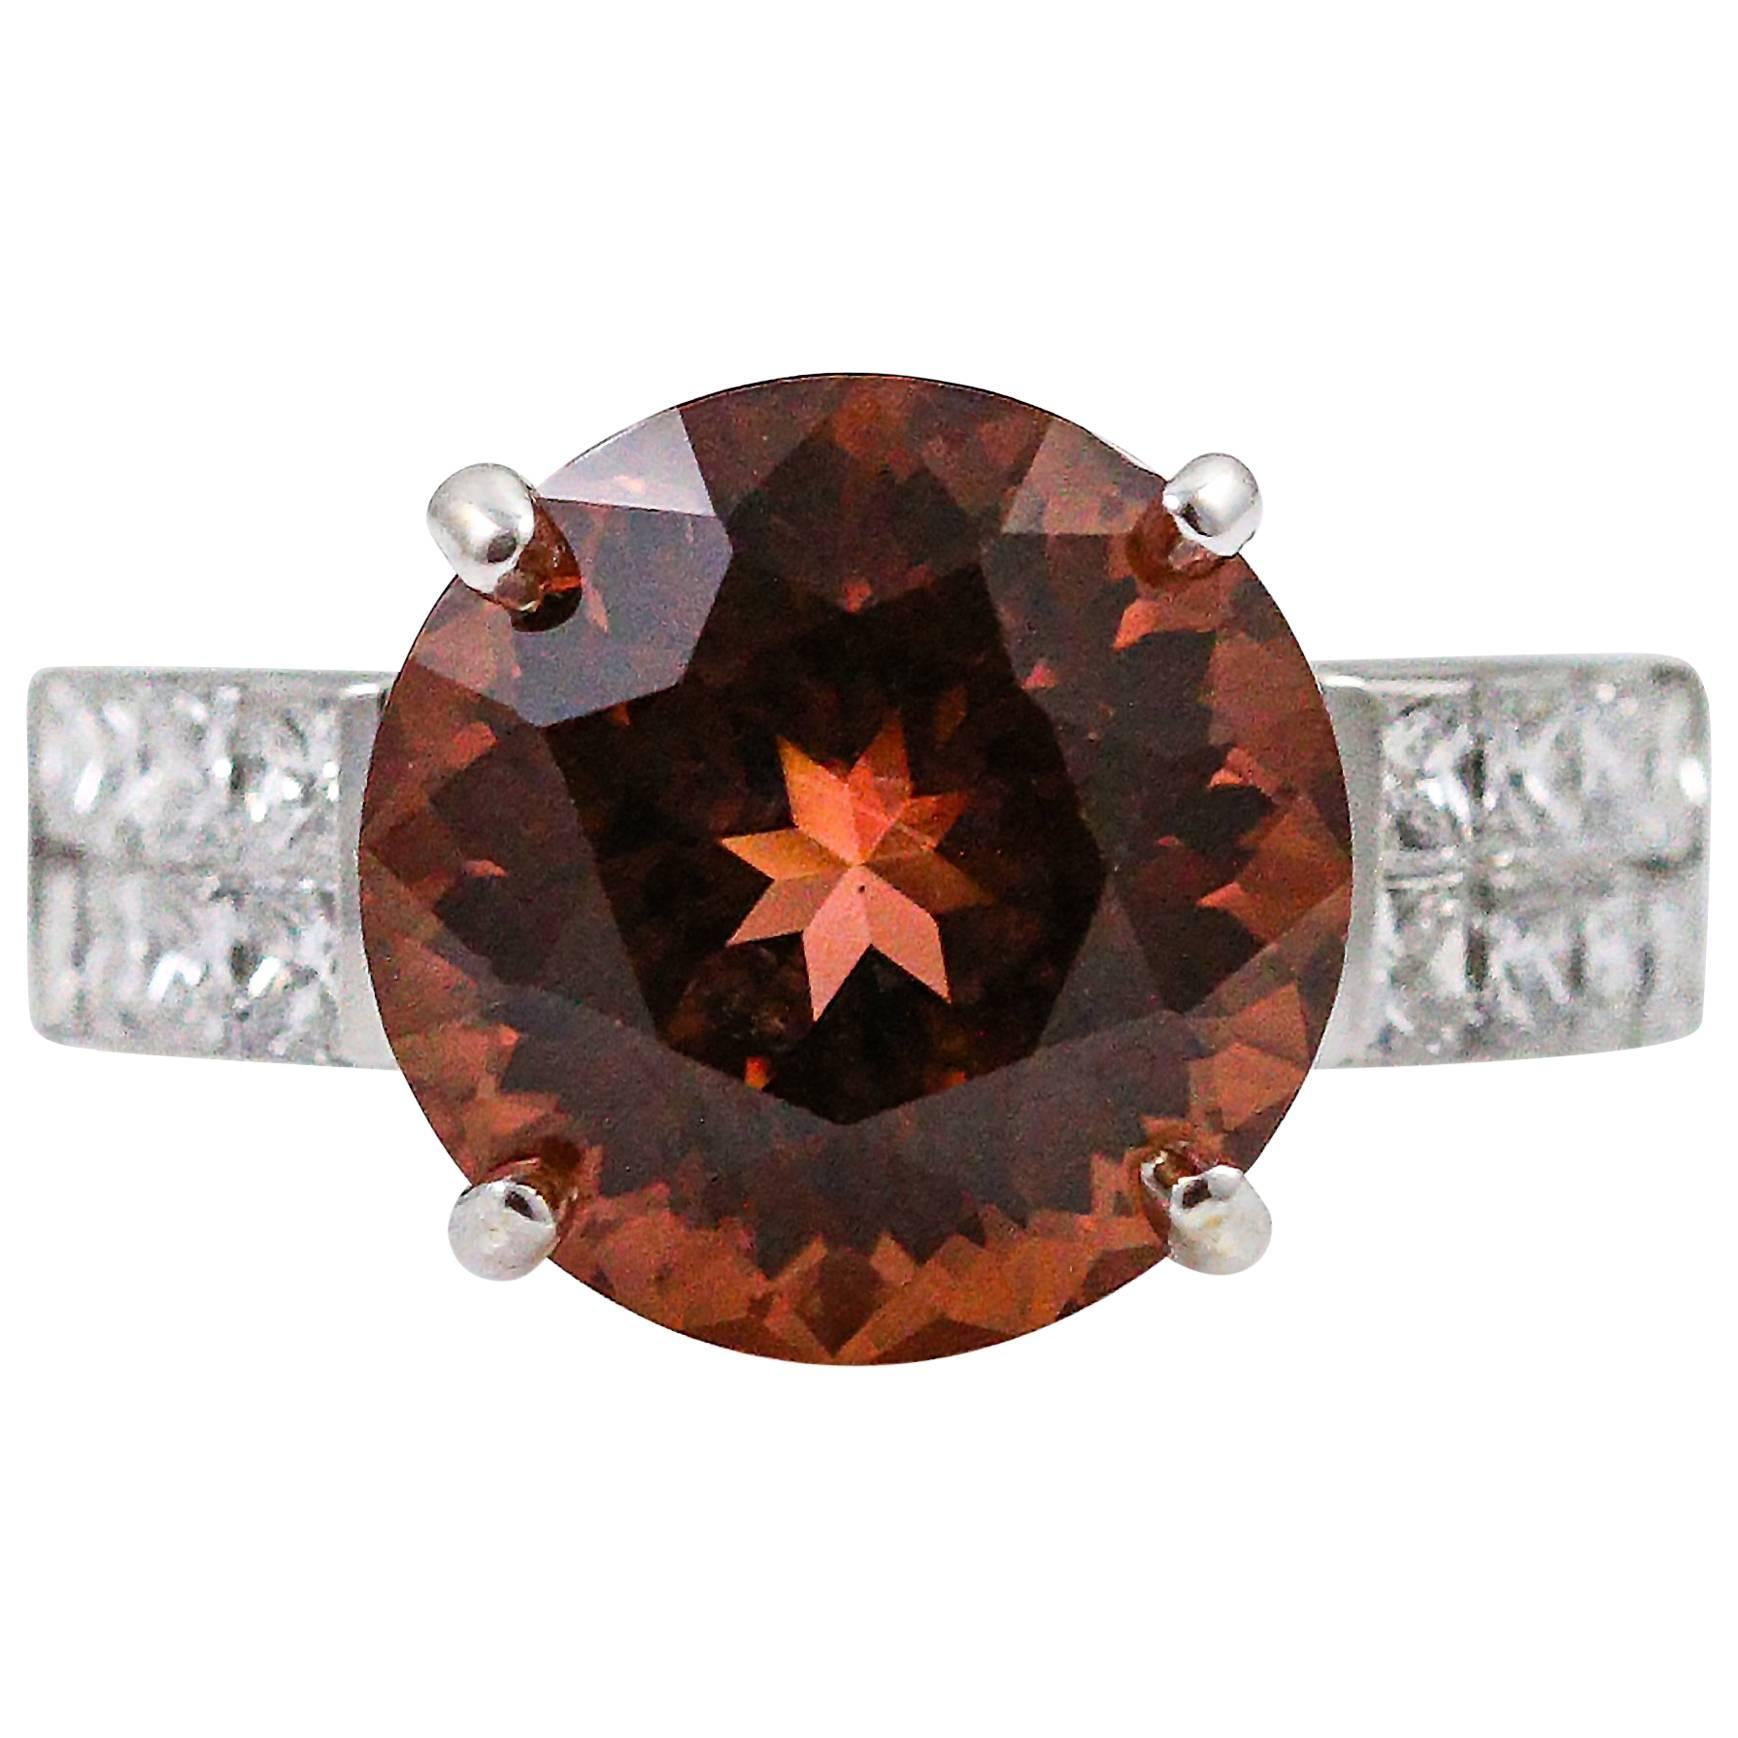 7.15 Carat Strong Pink Orange Tourmaline diamond gold Ring